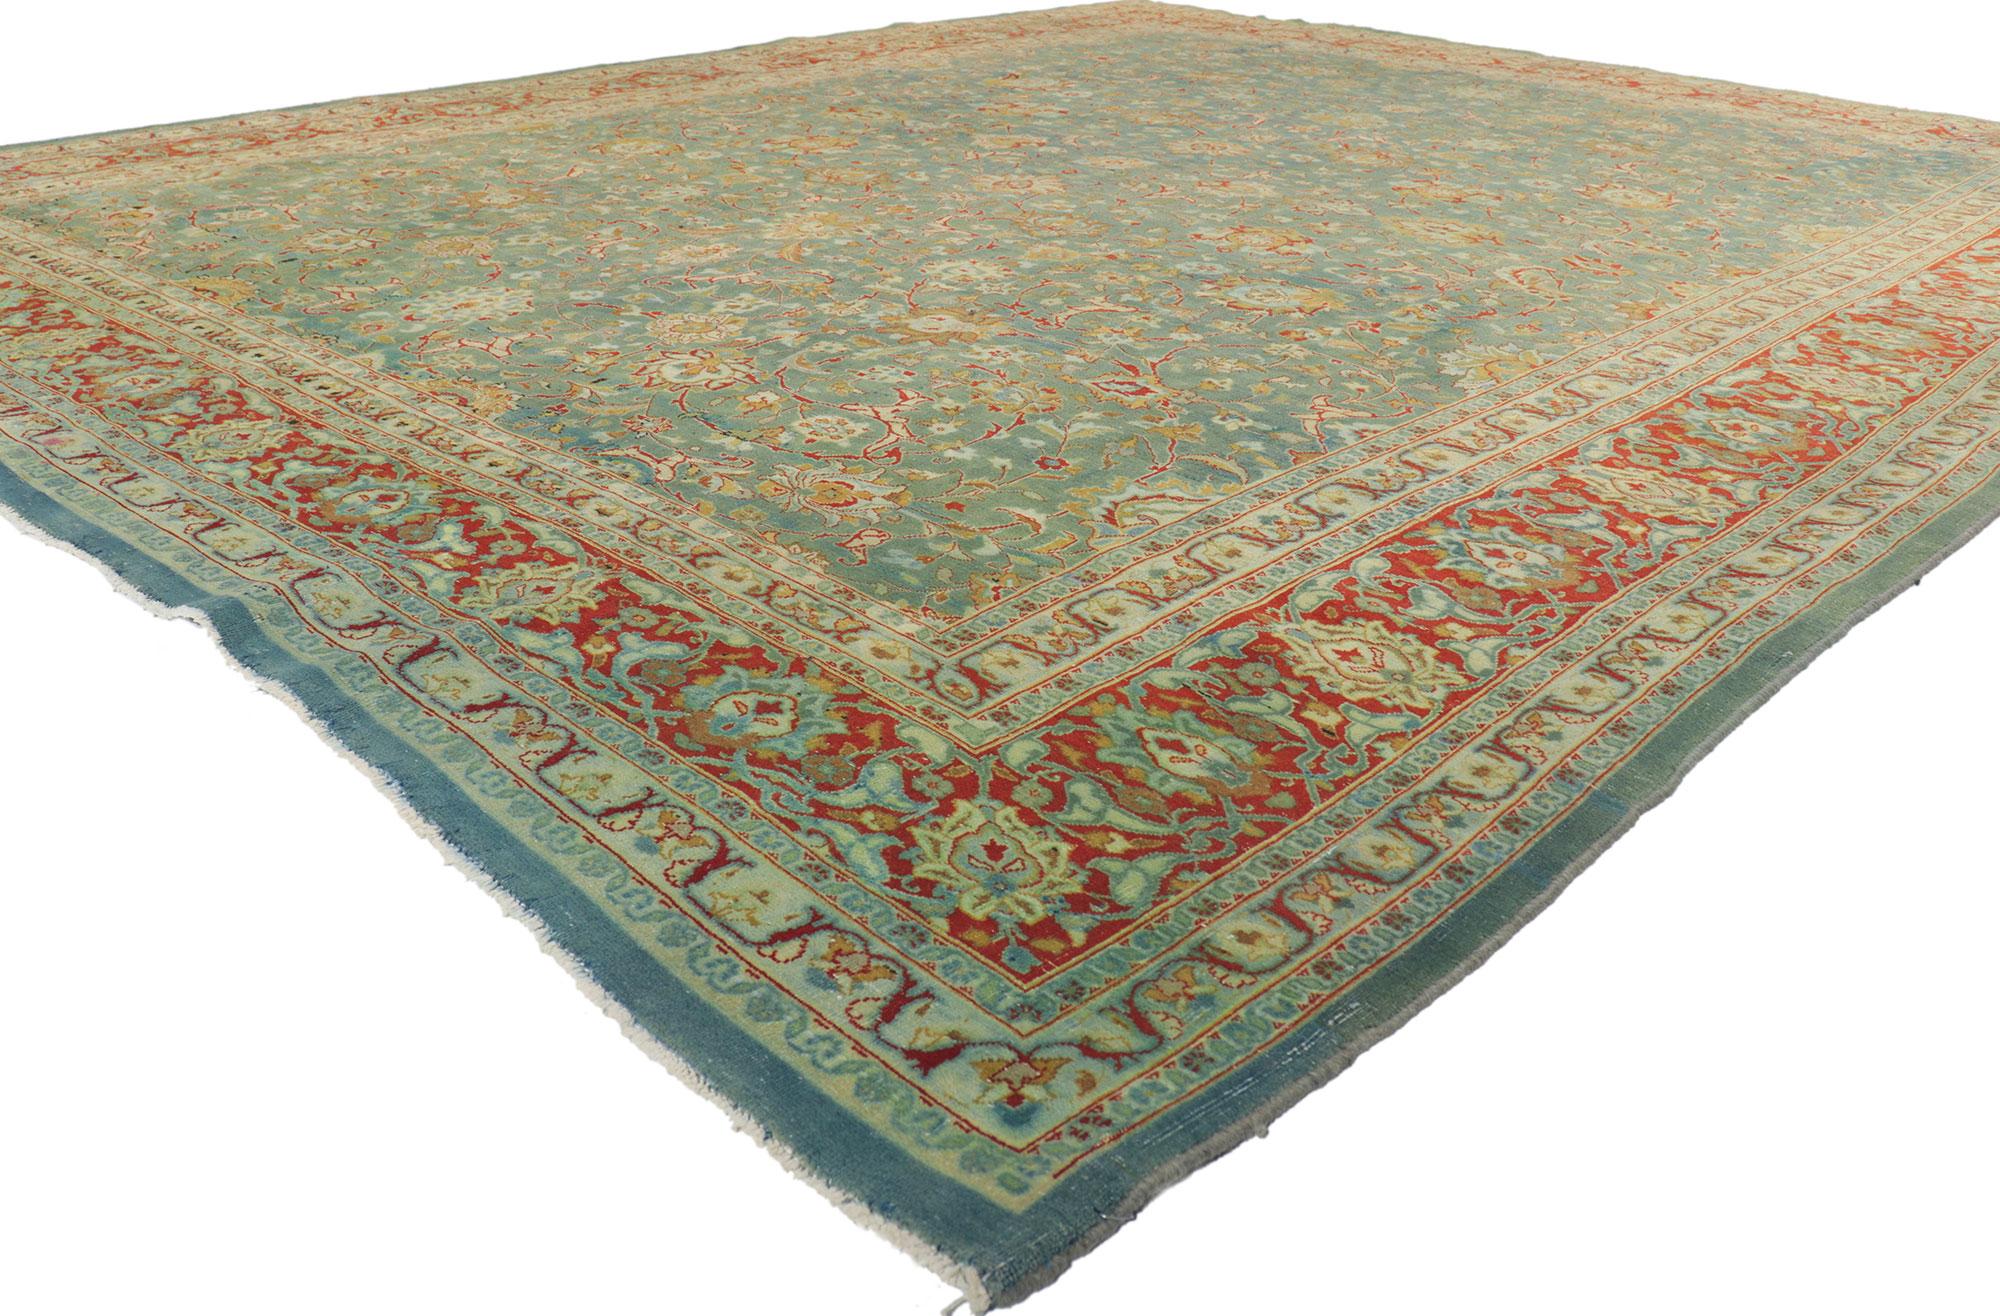 61178 Antique Persian Tabriz Rug, 09'08 x 12'05. Avec sa beauté sans effort et son design intemporel, ce tapis Tabriz persan ancien en laine noué à la main est prêt à impressionner. Le champ lavé à l'ancienne présente un motif botanique all over